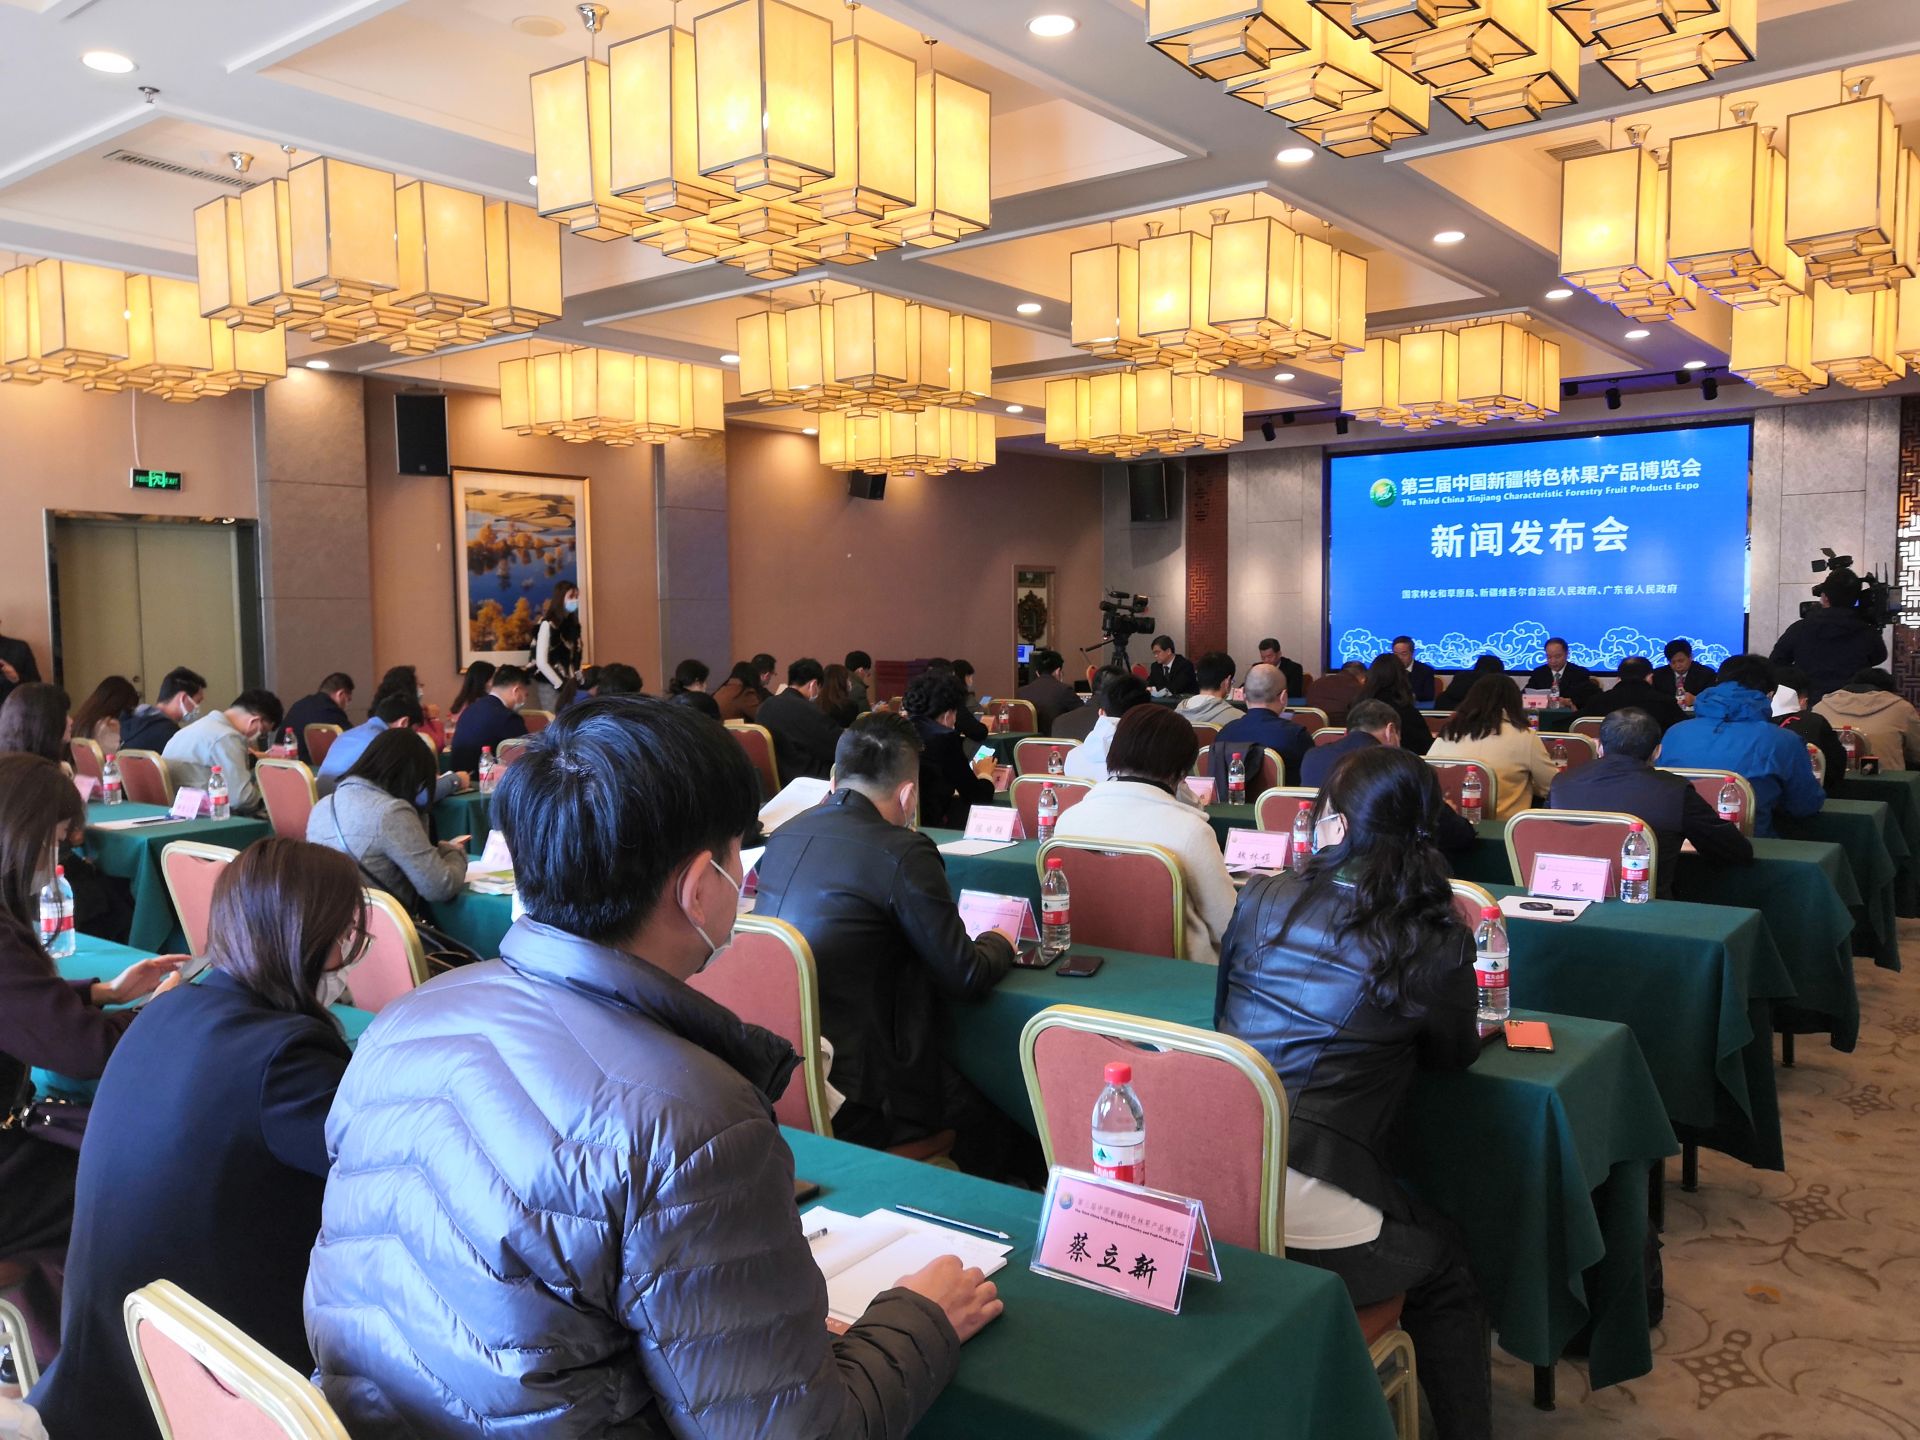 第三届中国新疆特色林果产品博览会将于12月25日至27日在广州举办